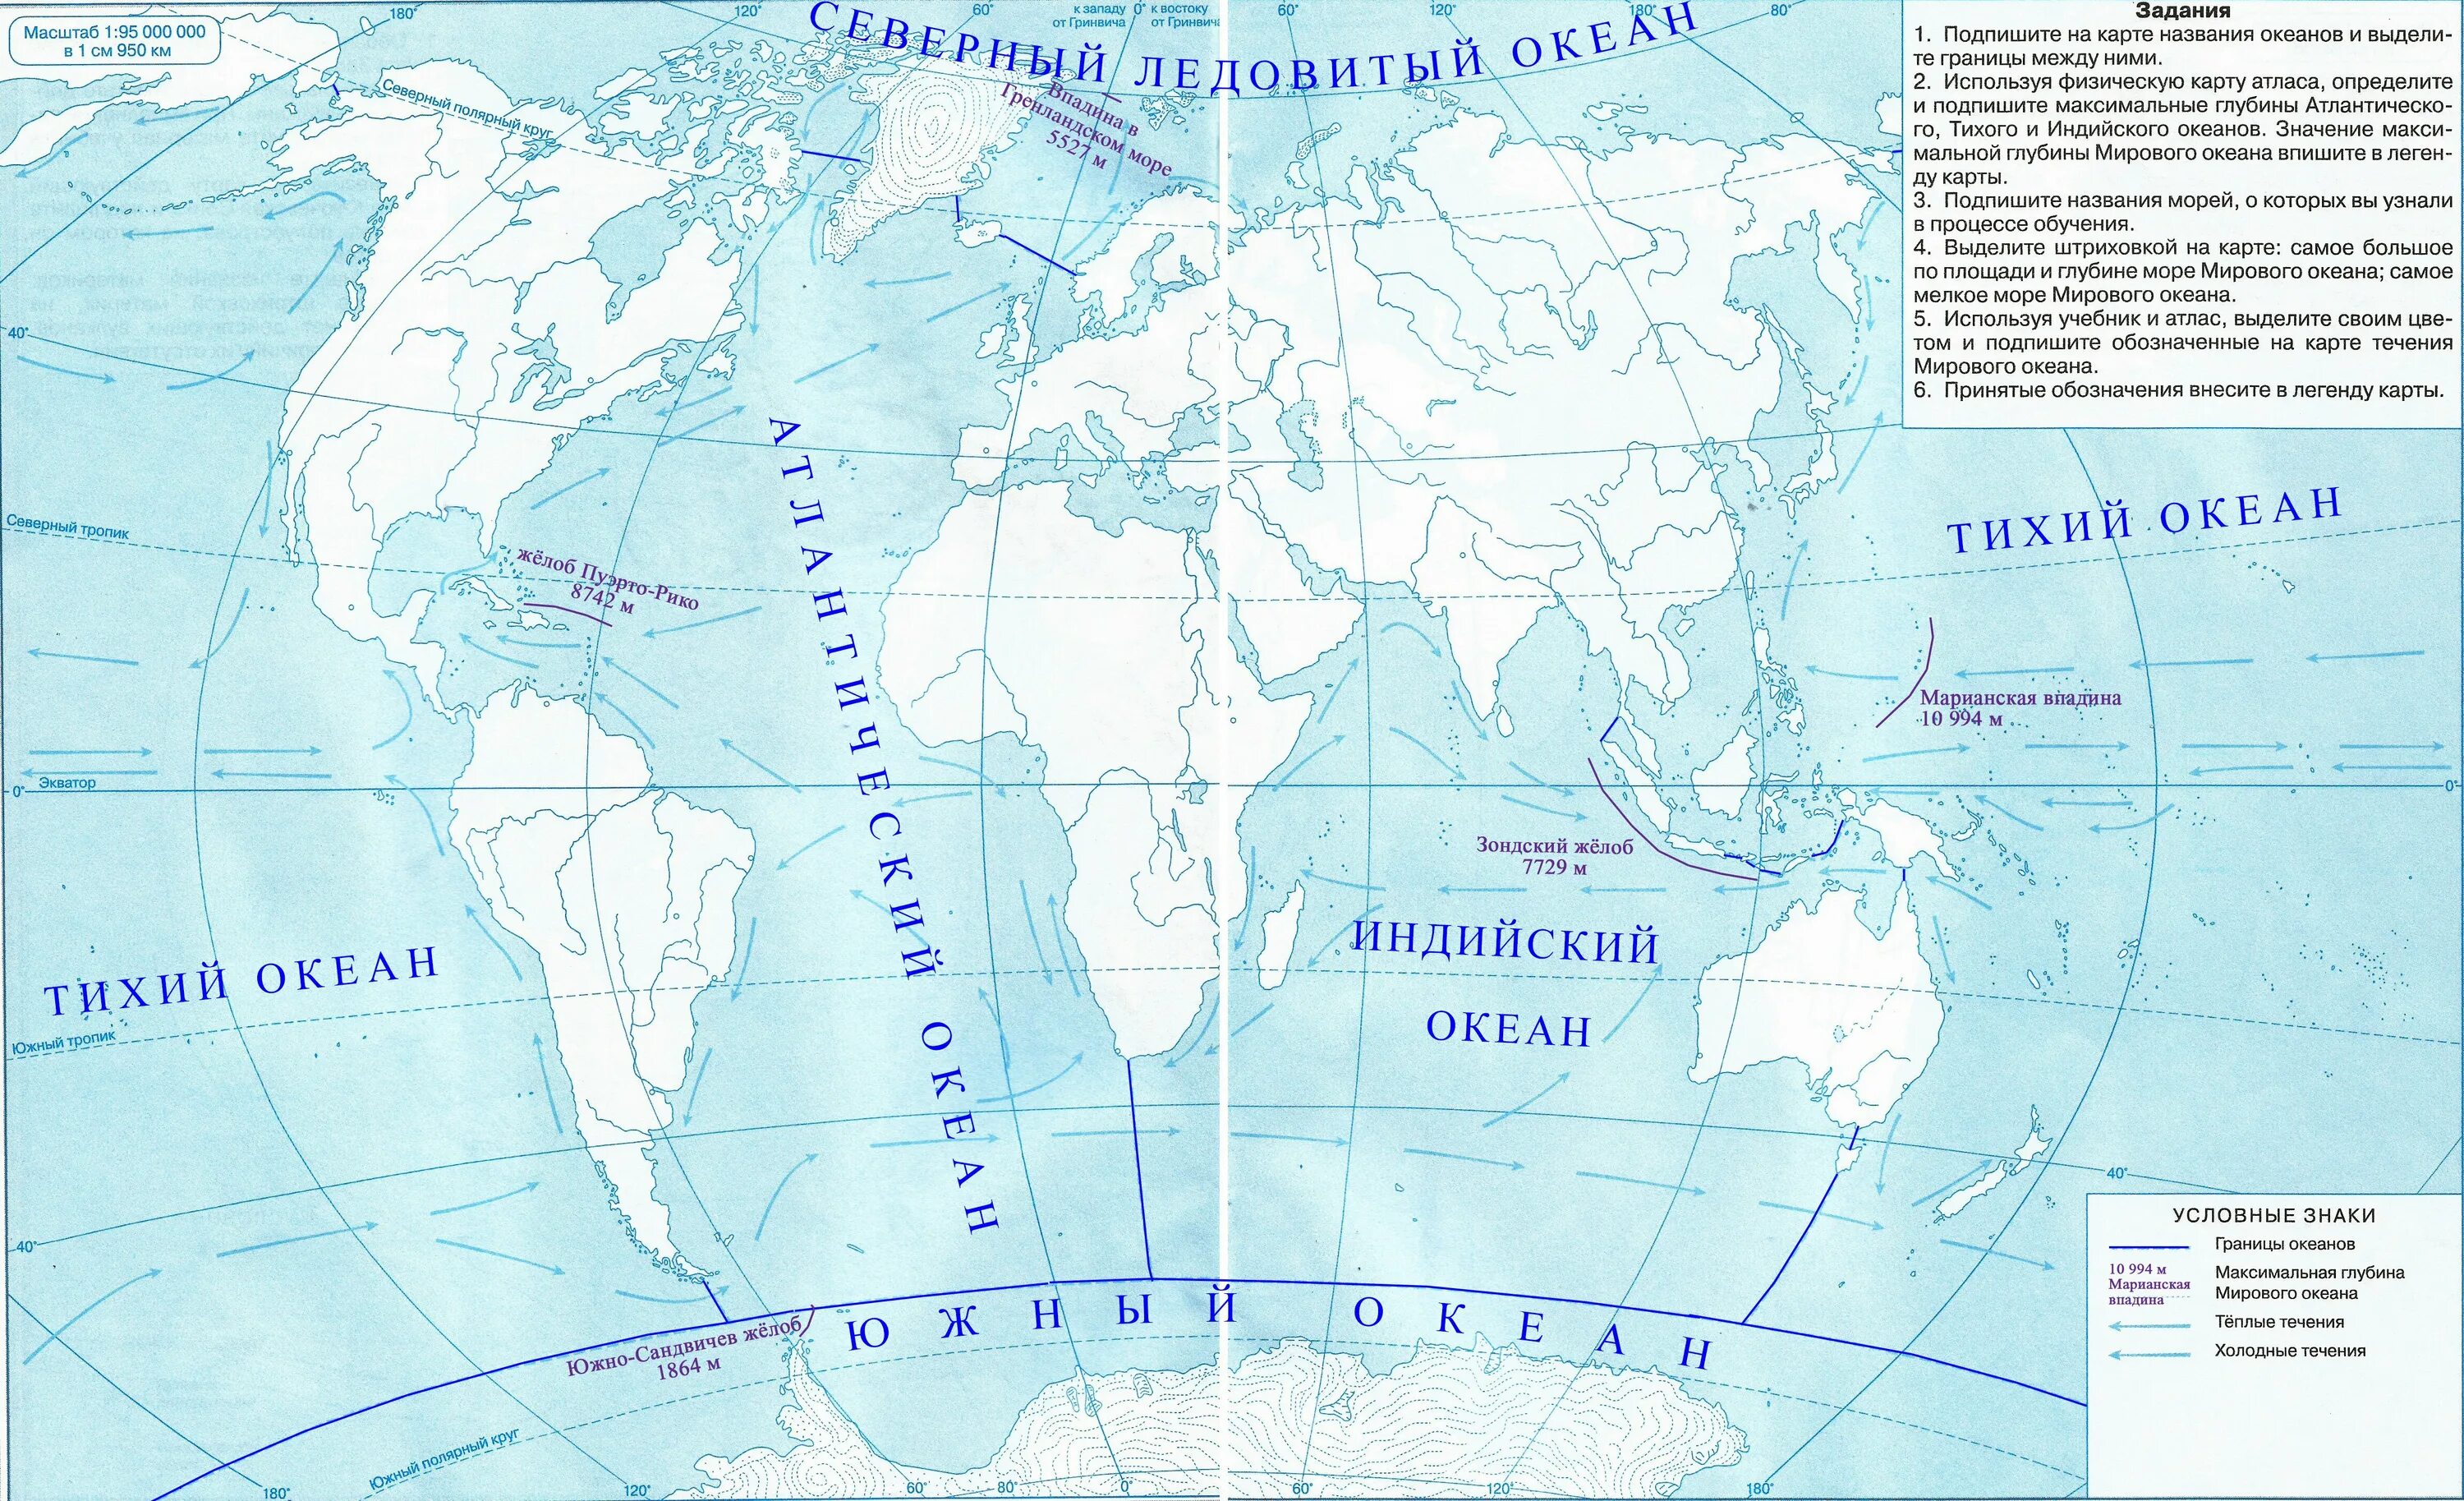 Контурная карта 6 класс решение. Контурная карта Тихого океана. Контурная карта по географии 5 класс карта мирового океана. Максимальная глубина мирового океана на контурной карте. Мировой океан течения в океане атлас 6 класс.